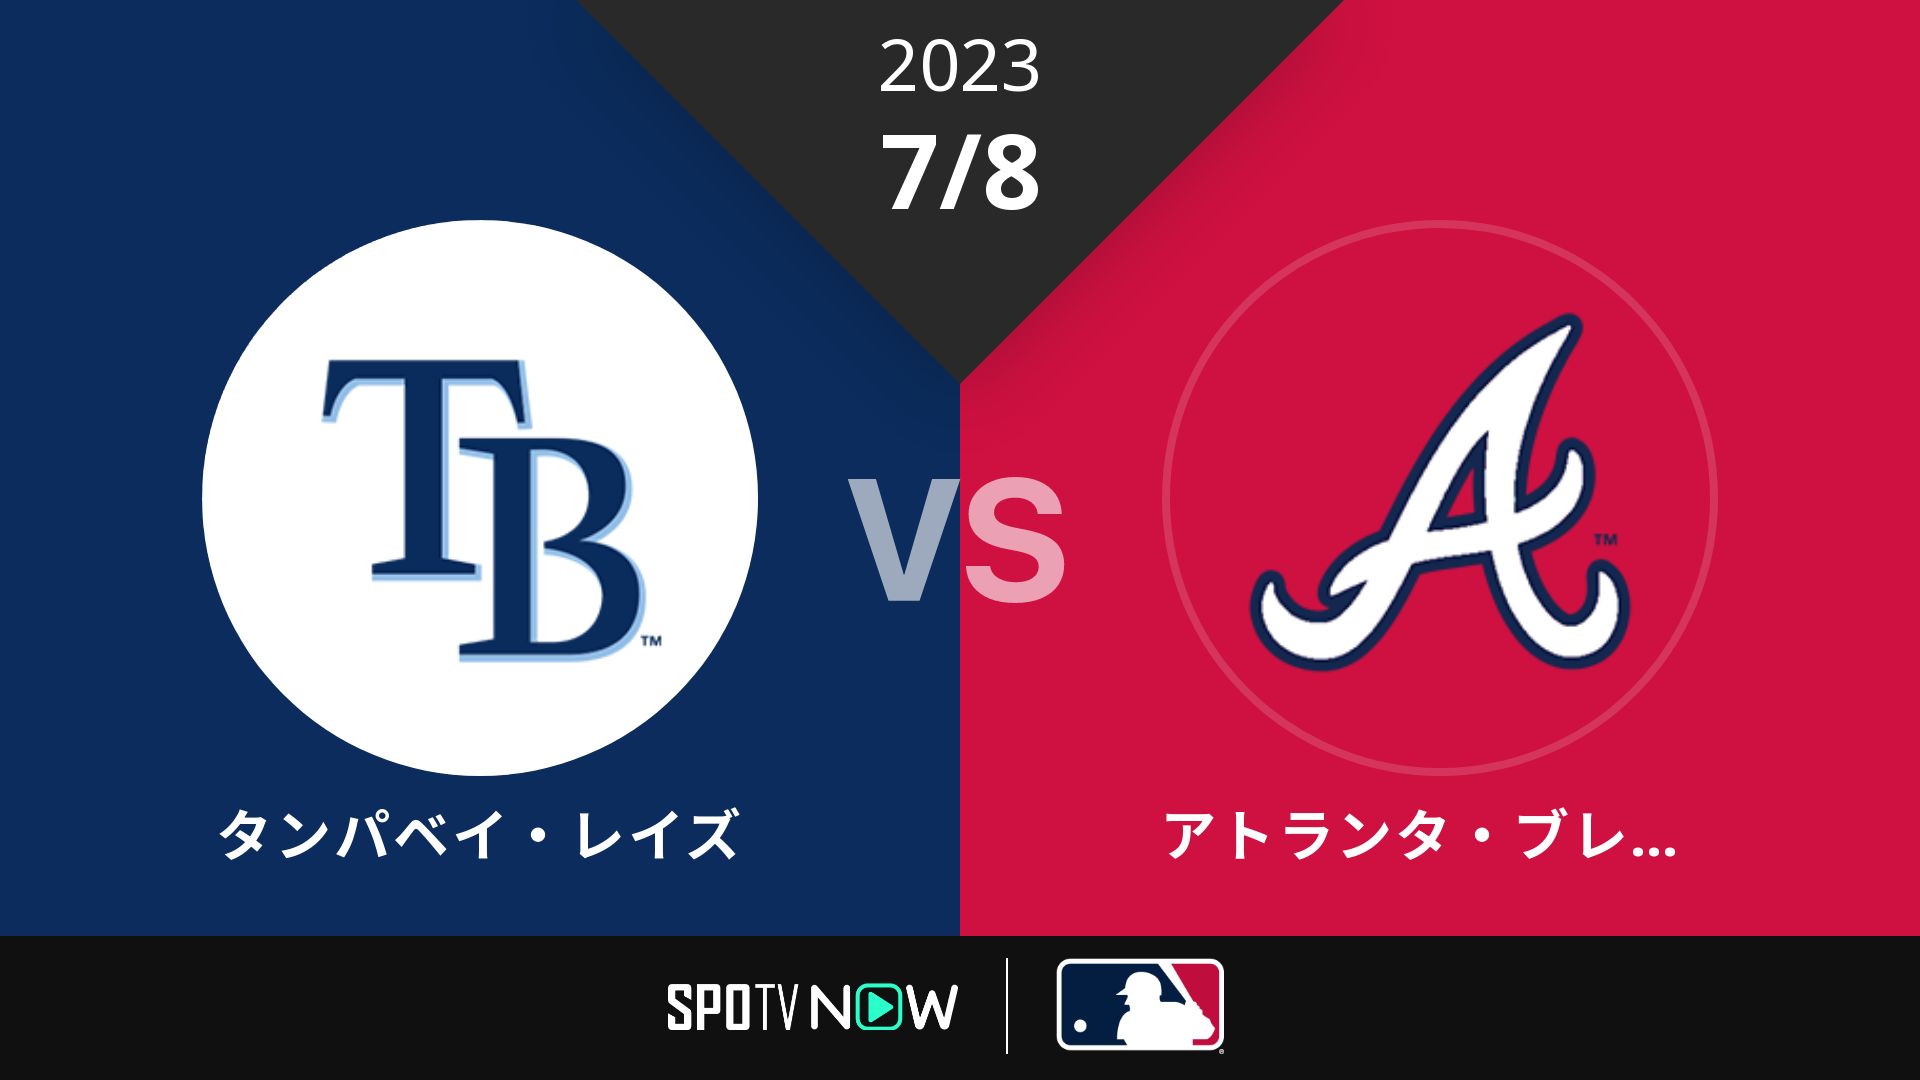 2023/7/8 レイズ vs ブレーブス [MLB]